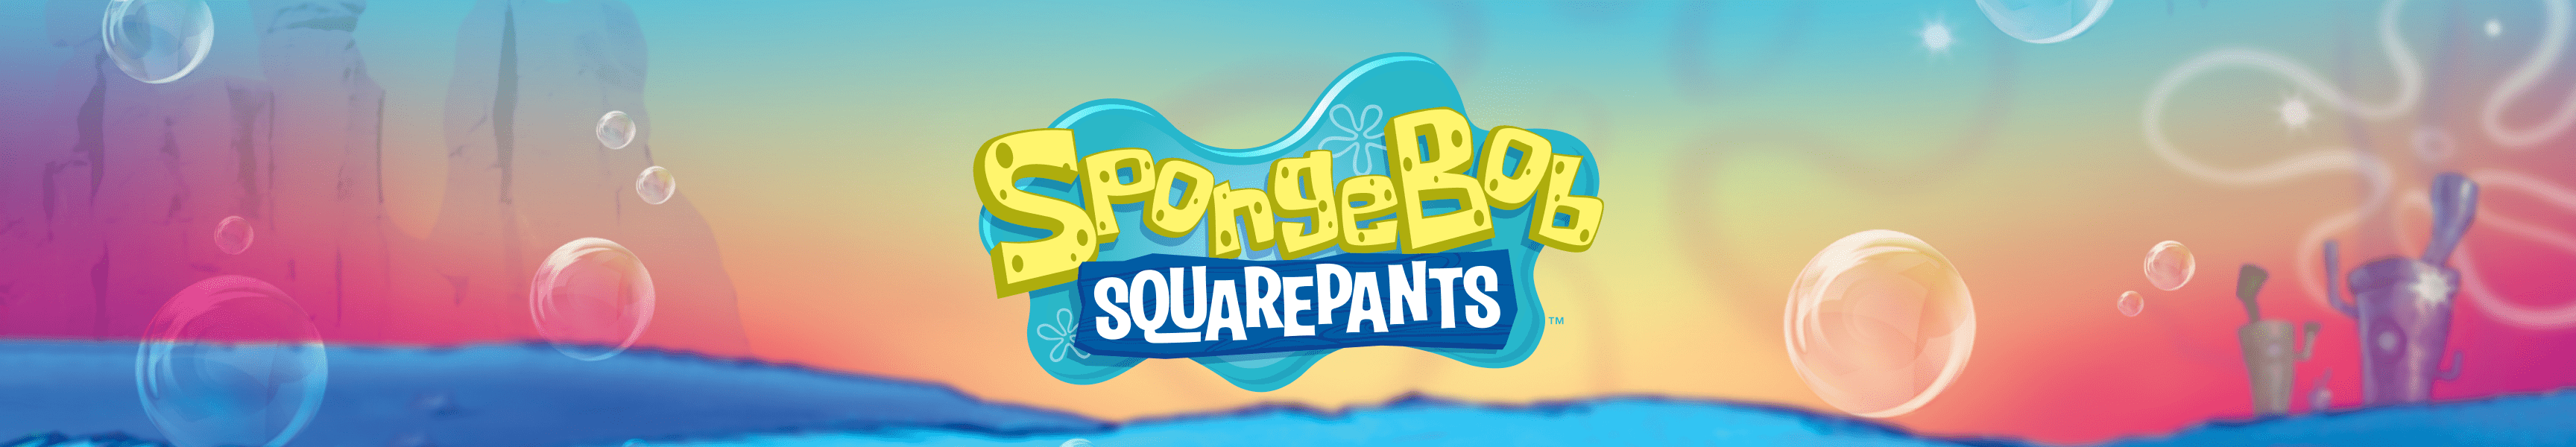 SpongeBob SquarePants Tank Tops